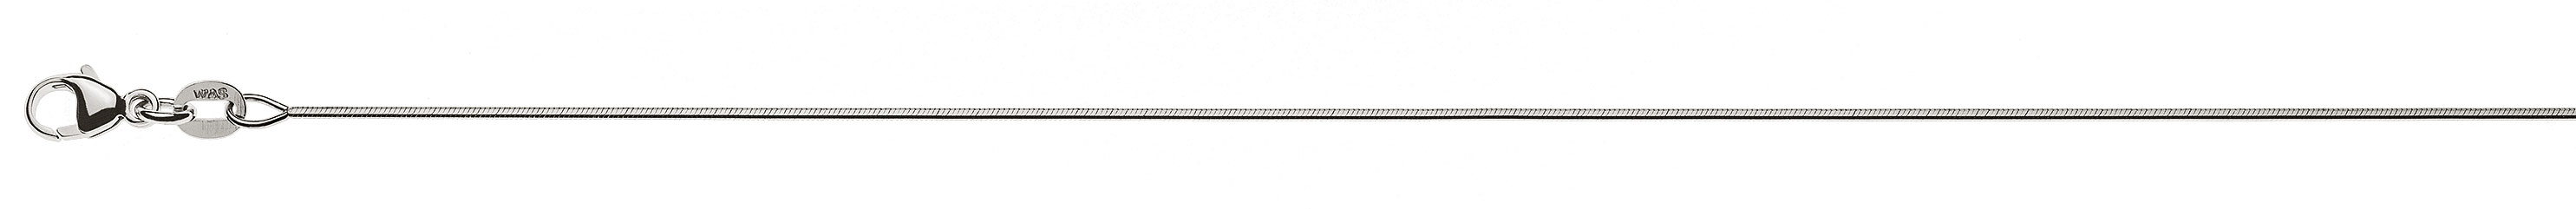 AURONOS Prestige Halskette Weissgold 18K Schlangenkette diamantiert 50cm 0.8mm